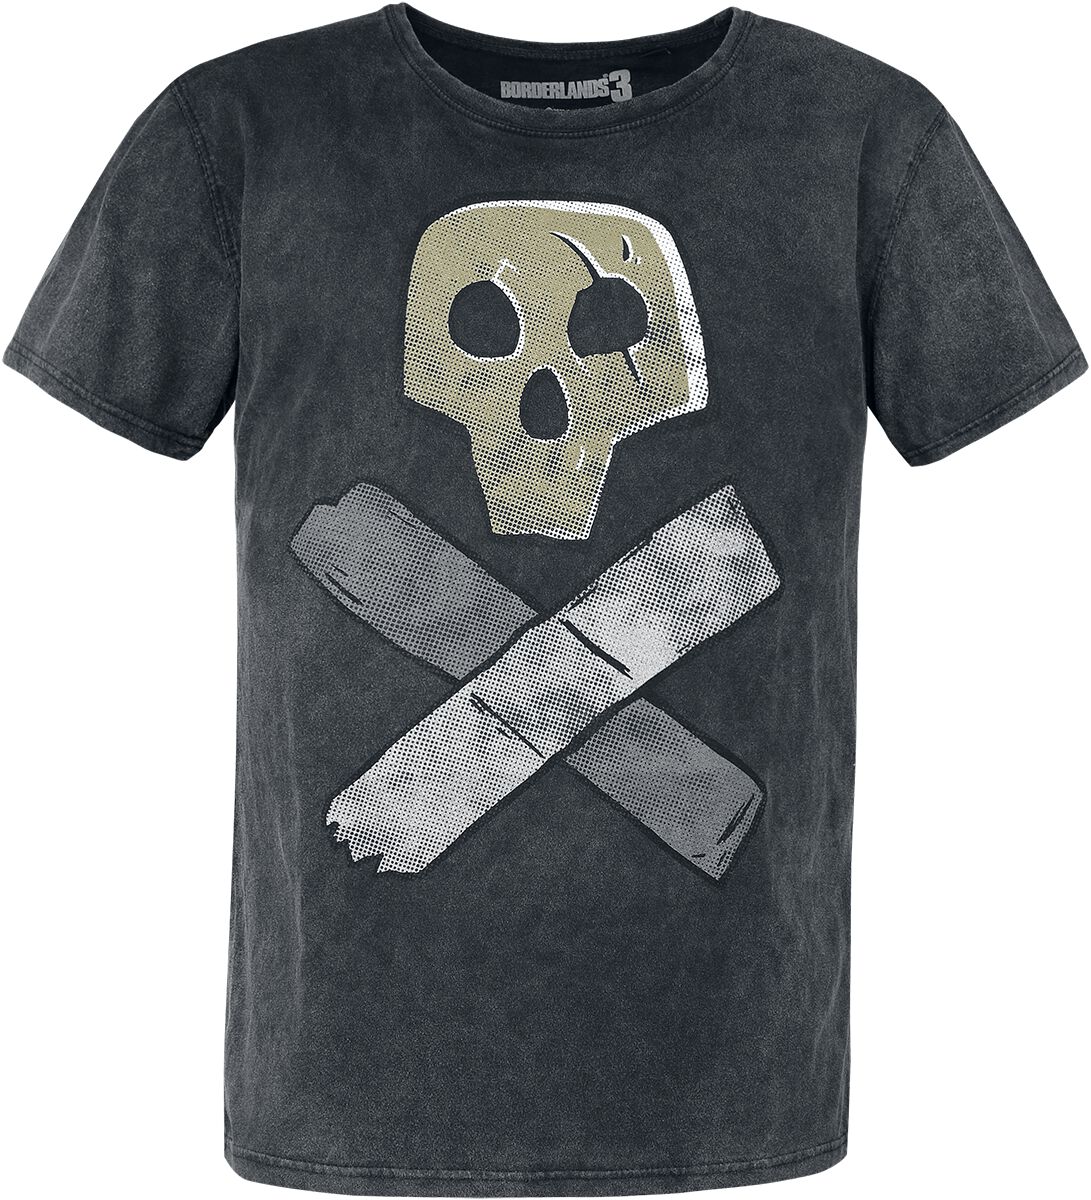 Borderlands - Gaming T-Shirt - 3 - Skull - S bis XL - für Männer - Größe XL - grau  - EMP exklusives Merchandise!